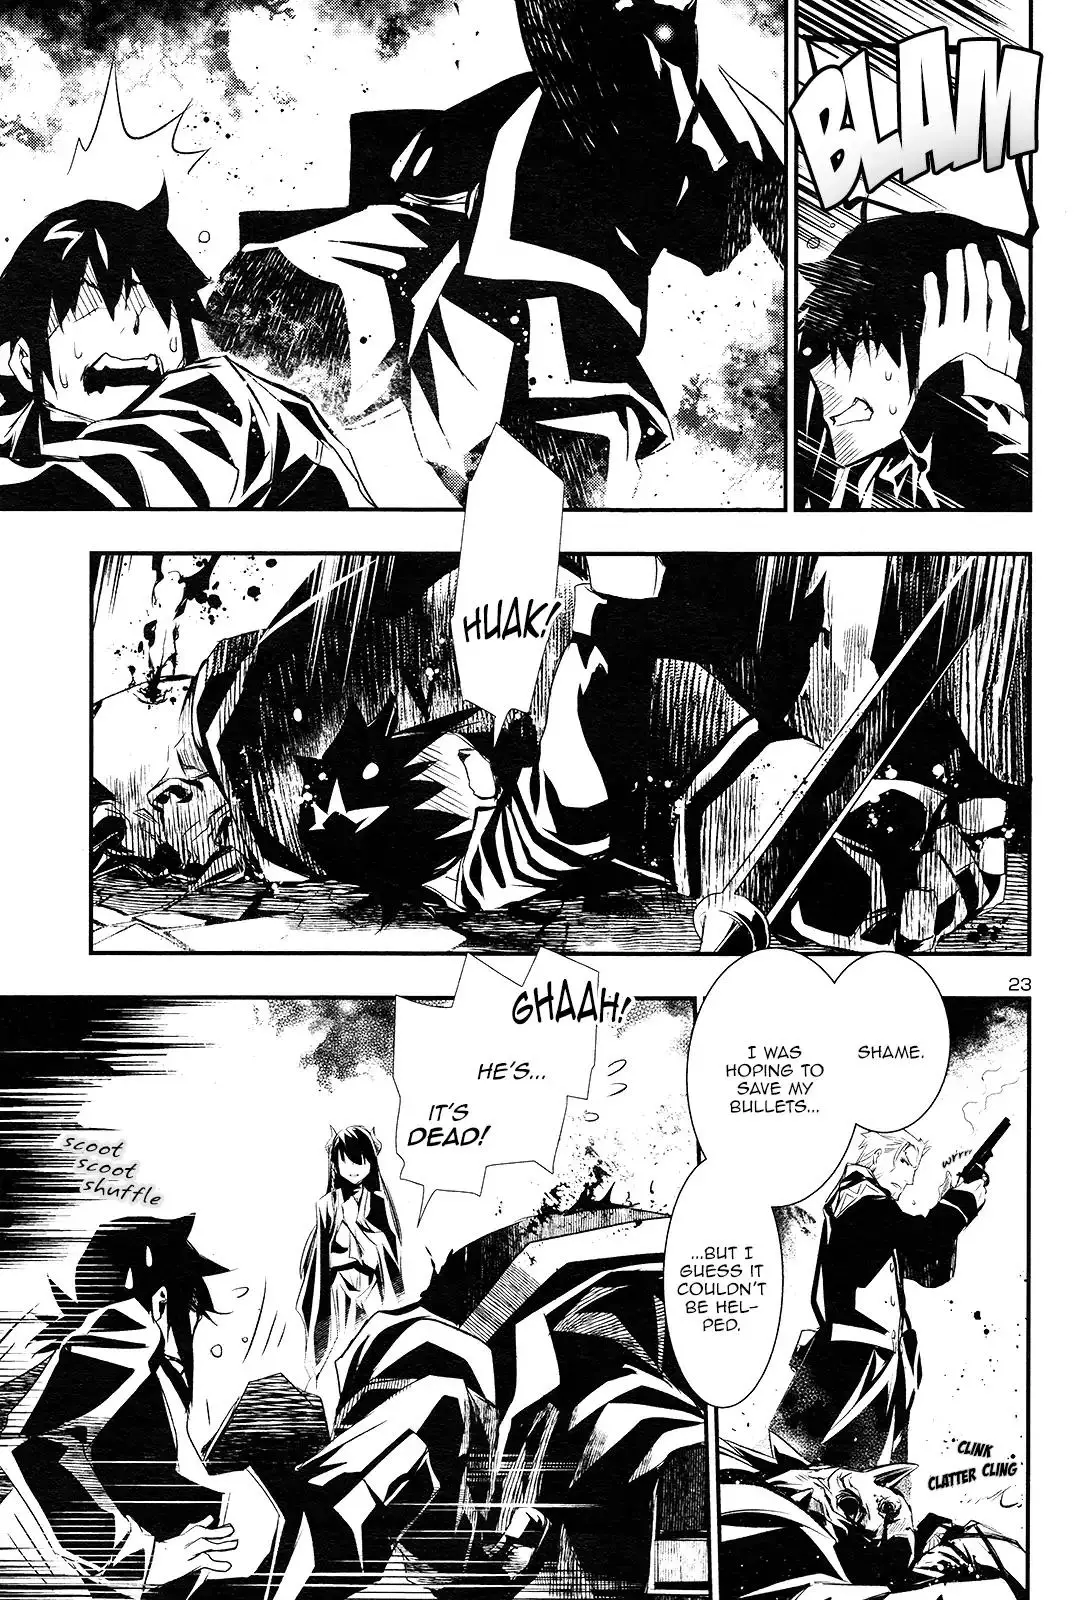 Shinju no Nectar - 1 page 23